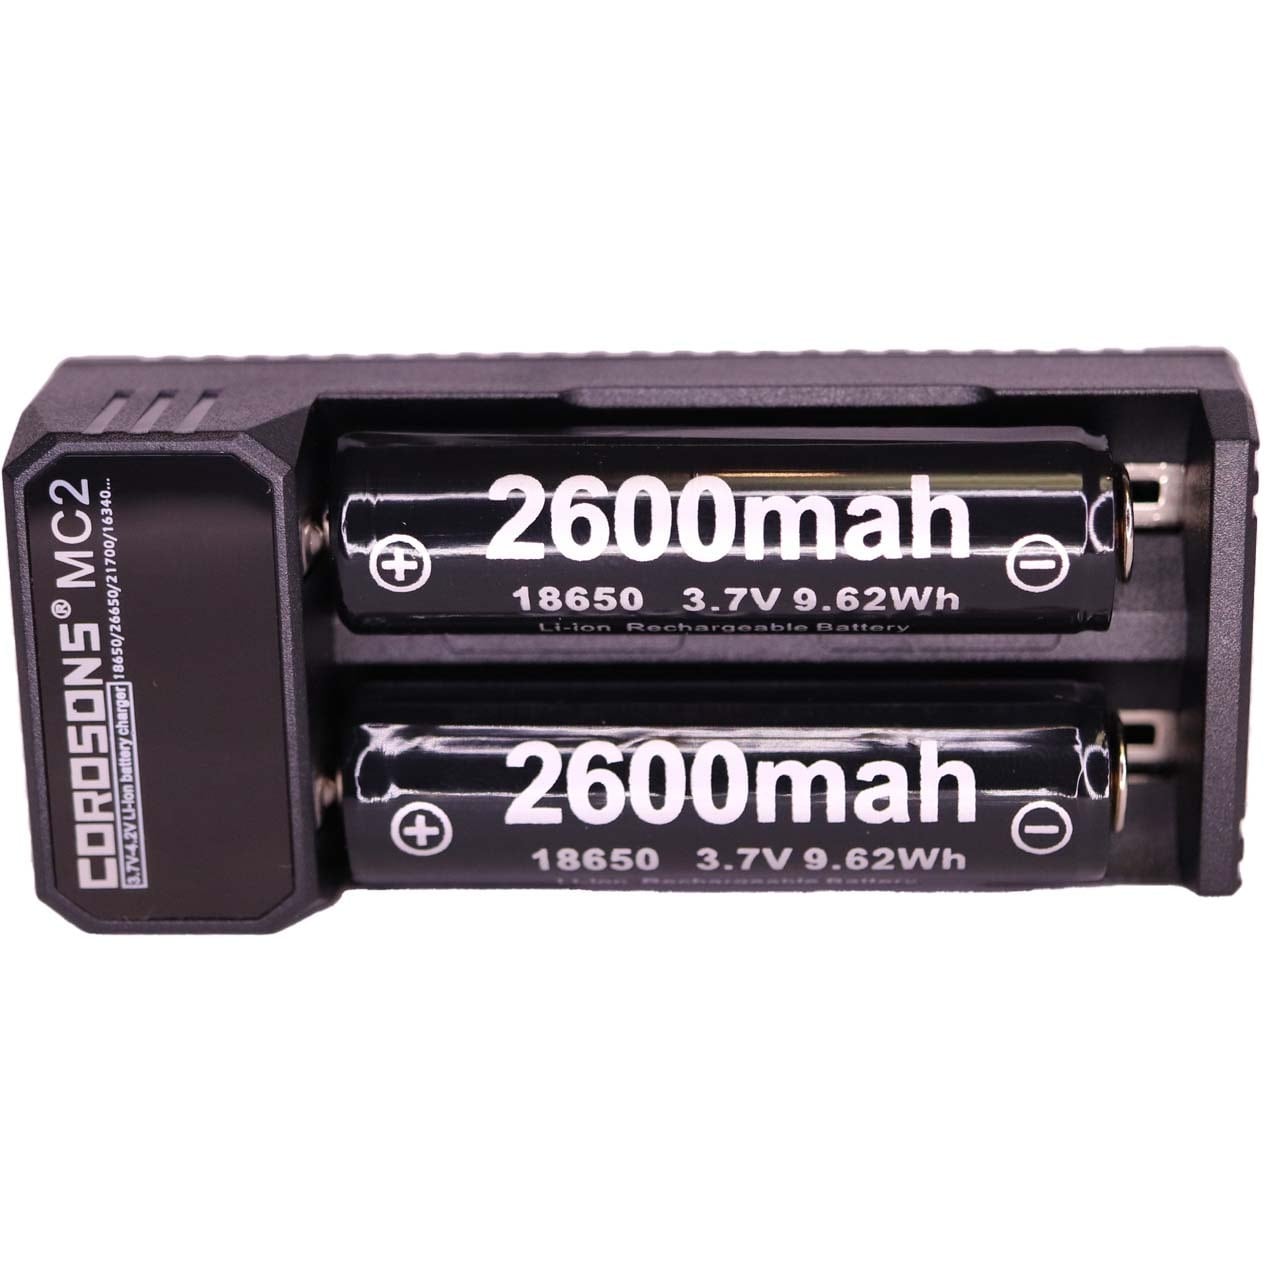 正規容量 18650 リチウムイオン 2本+急速充電器S77367 充電池